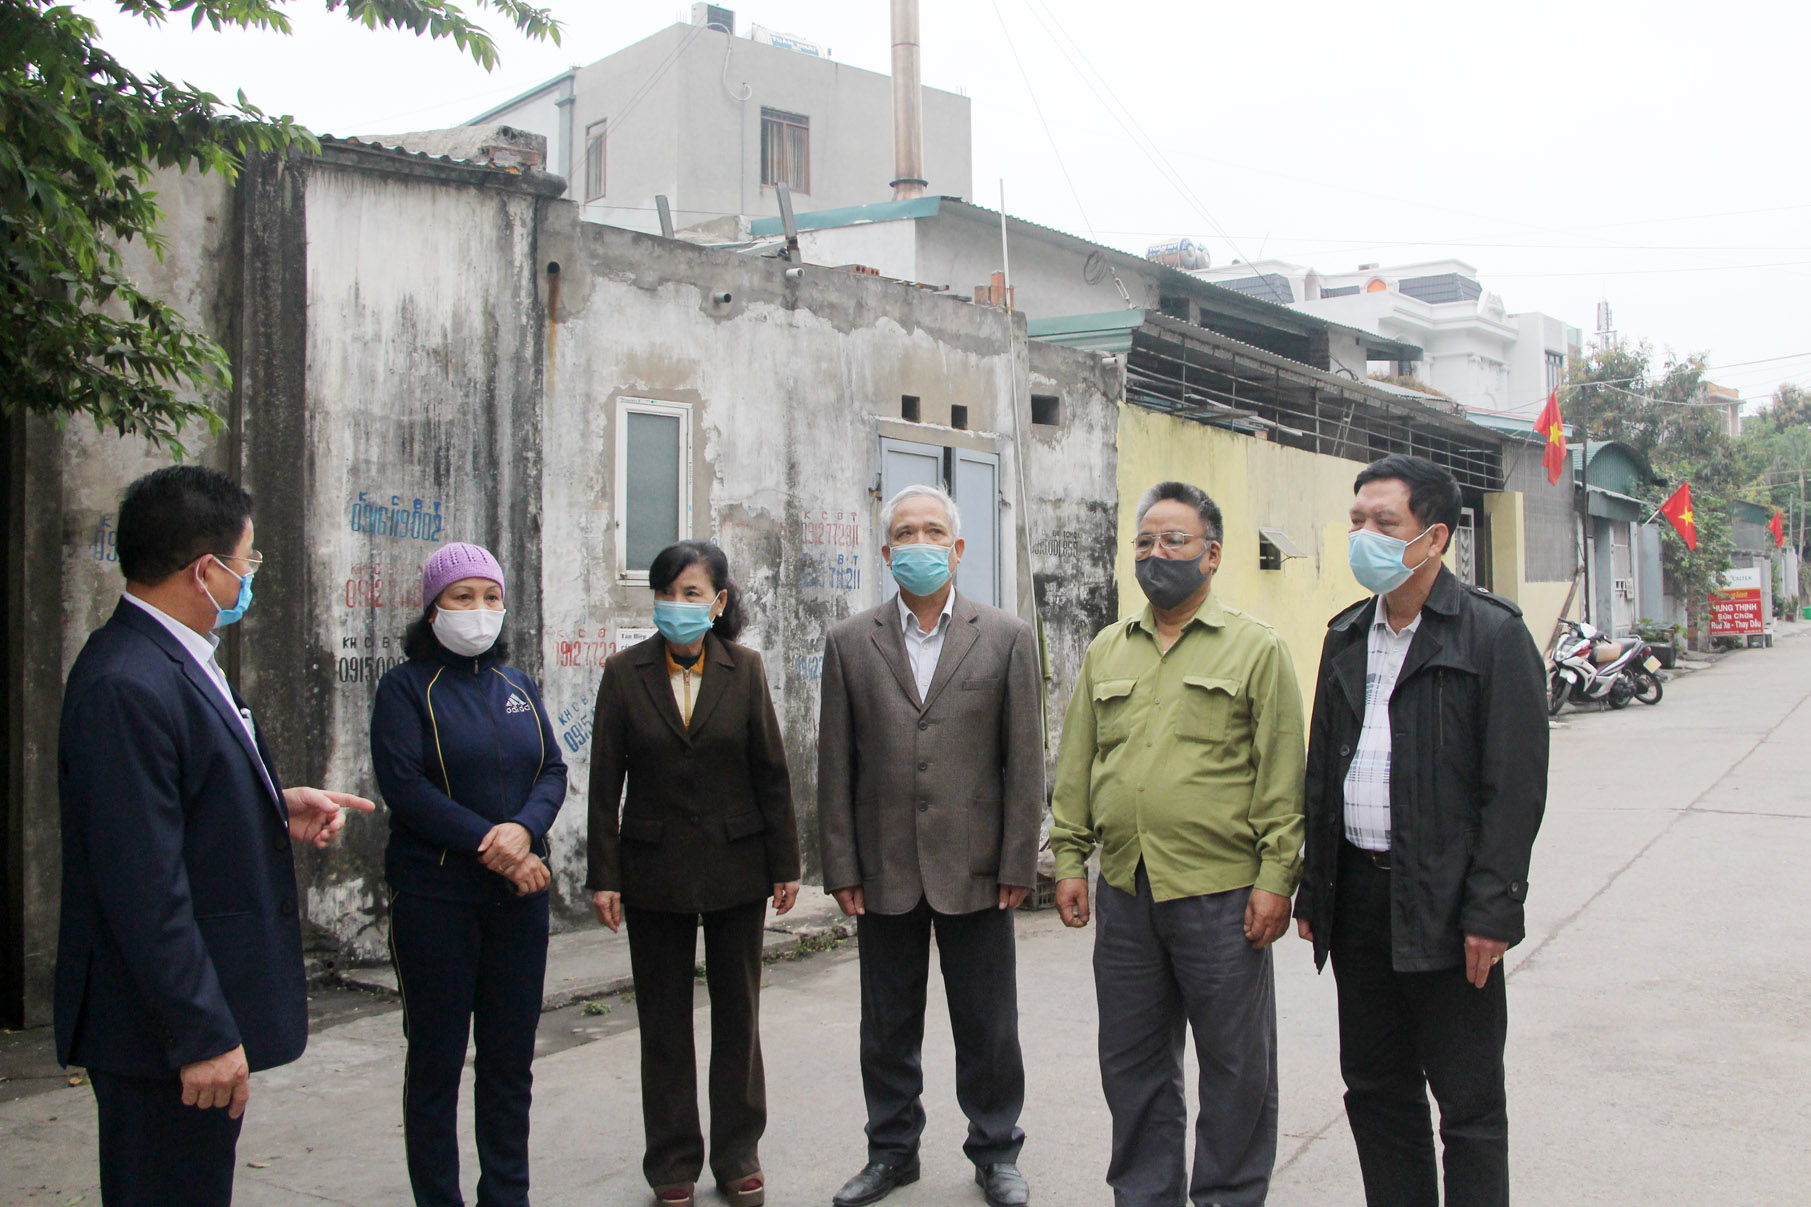 Đồng chí Bùi Văn Huấn, Bí thư chi bộ, Trưởng khu 6, phường Hồng Hà (ngoài cùng bên trái) trao đổi với các đảng viên trong khu.